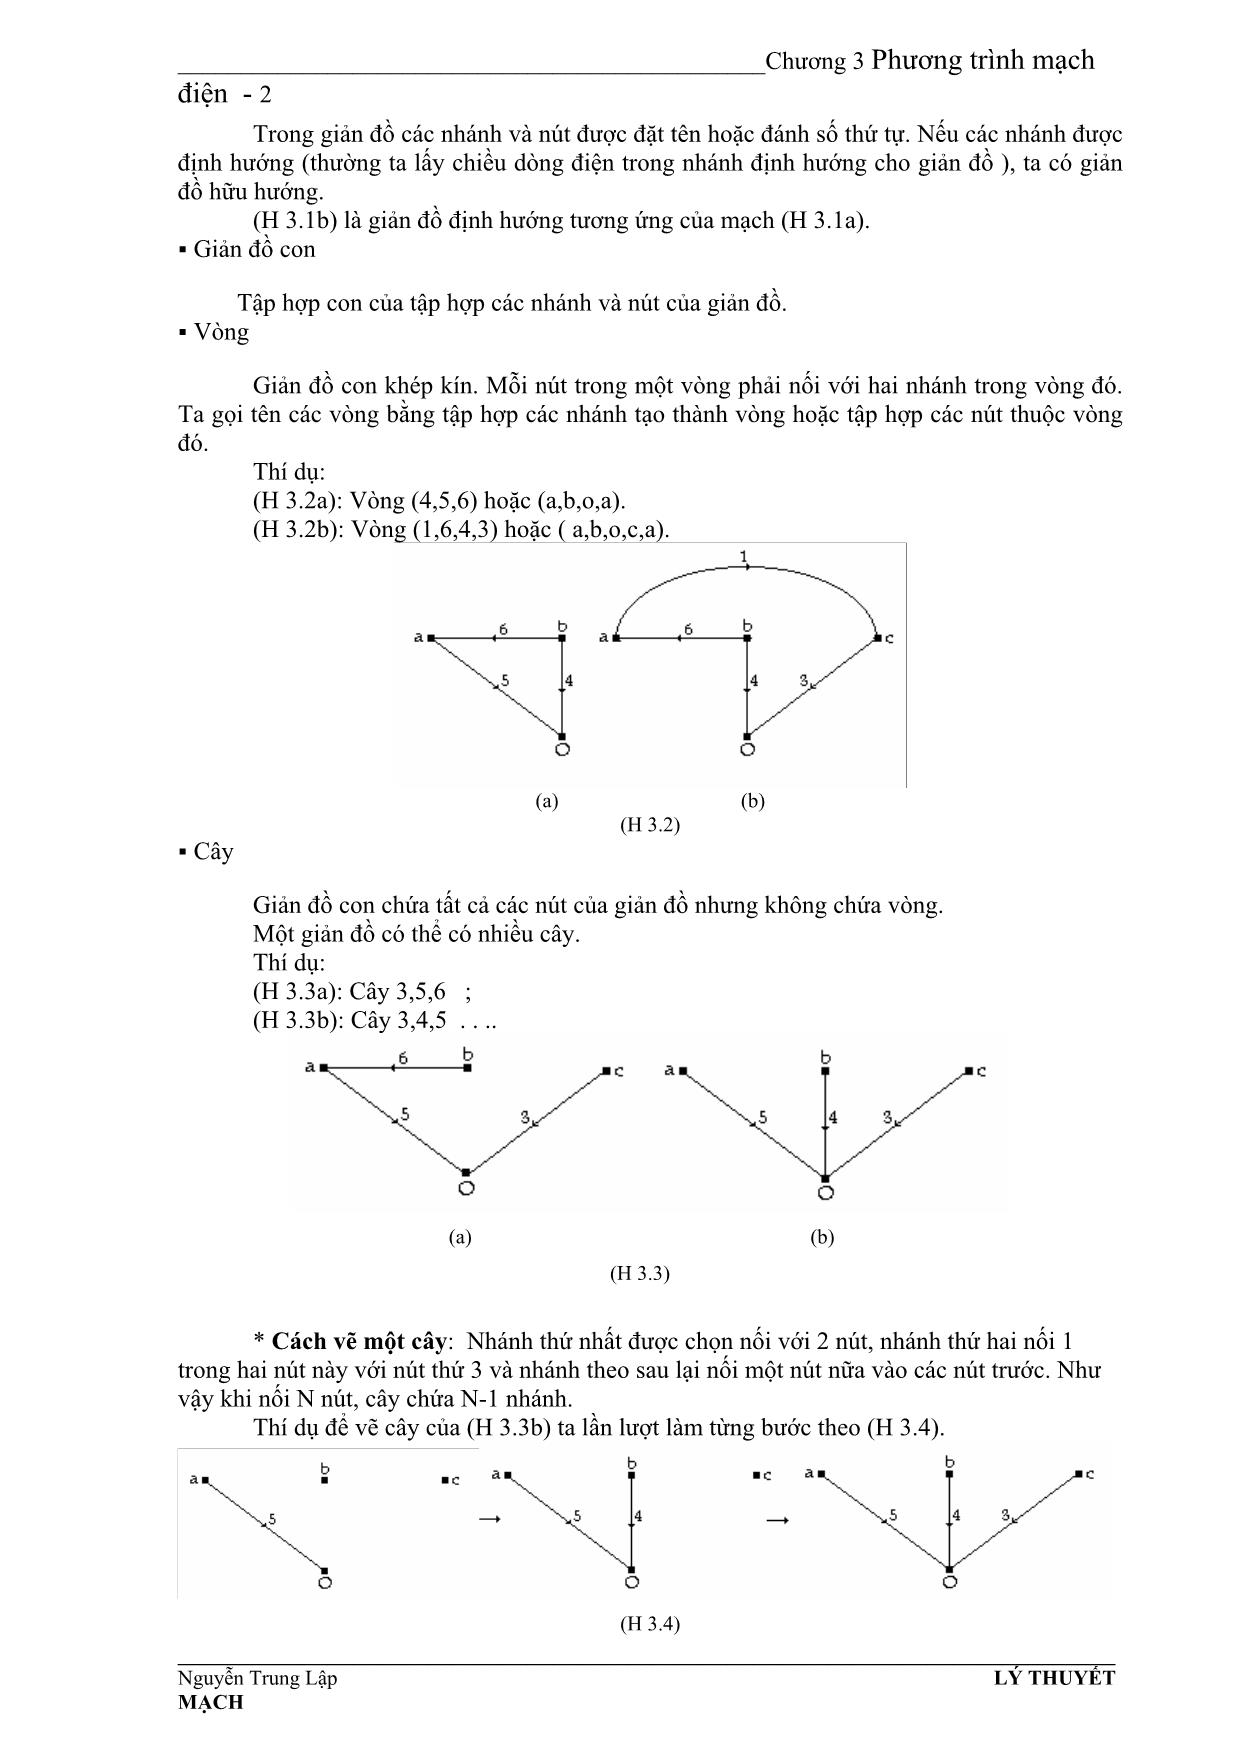 Giáo trình Mạch điện - Chương 3: Phương trình mạch điện trang 2